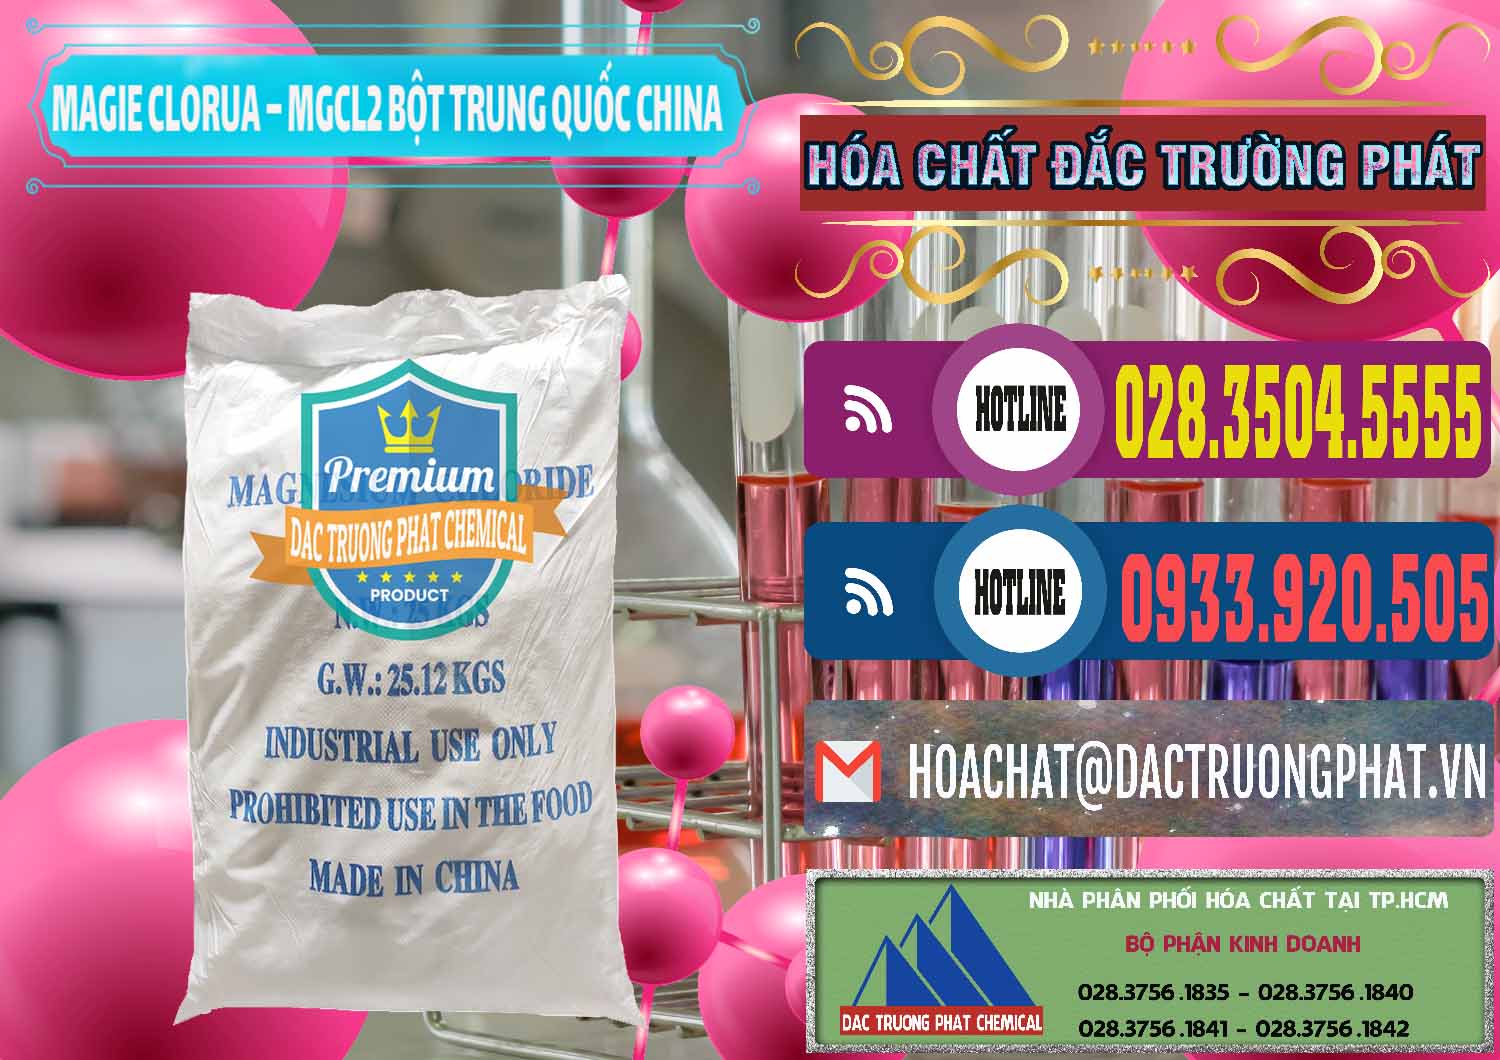 Chuyên bán ( phân phối ) Magie Clorua – MGCL2 96% Dạng Bột Bao Chữ Xanh Trung Quốc China - 0207 - Nơi chuyên bán ( cung cấp ) hóa chất tại TP.HCM - muabanhoachat.com.vn